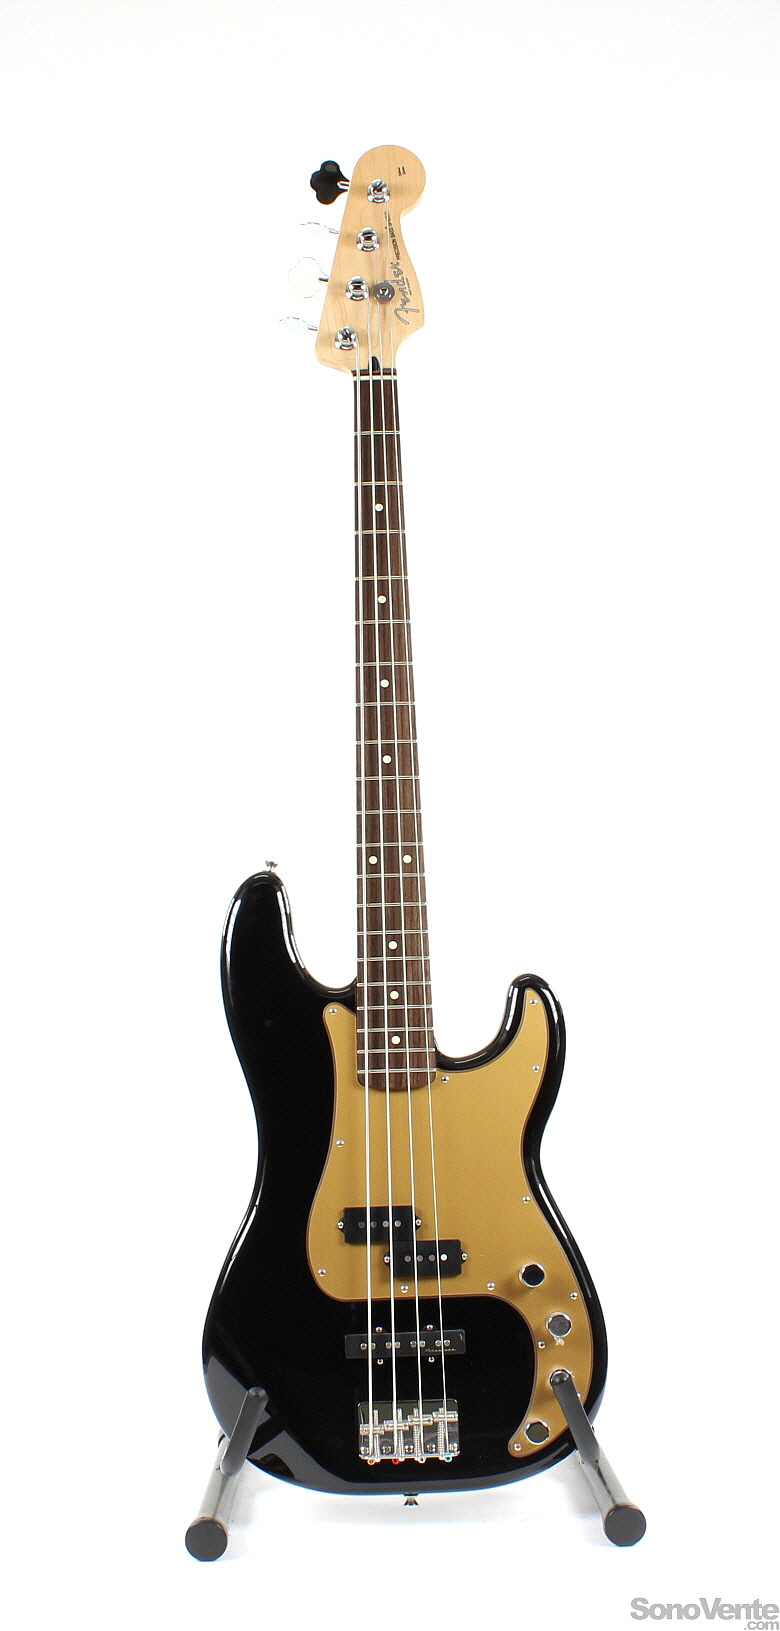 Deluxe Active P-Bass - Black Rwd Fender